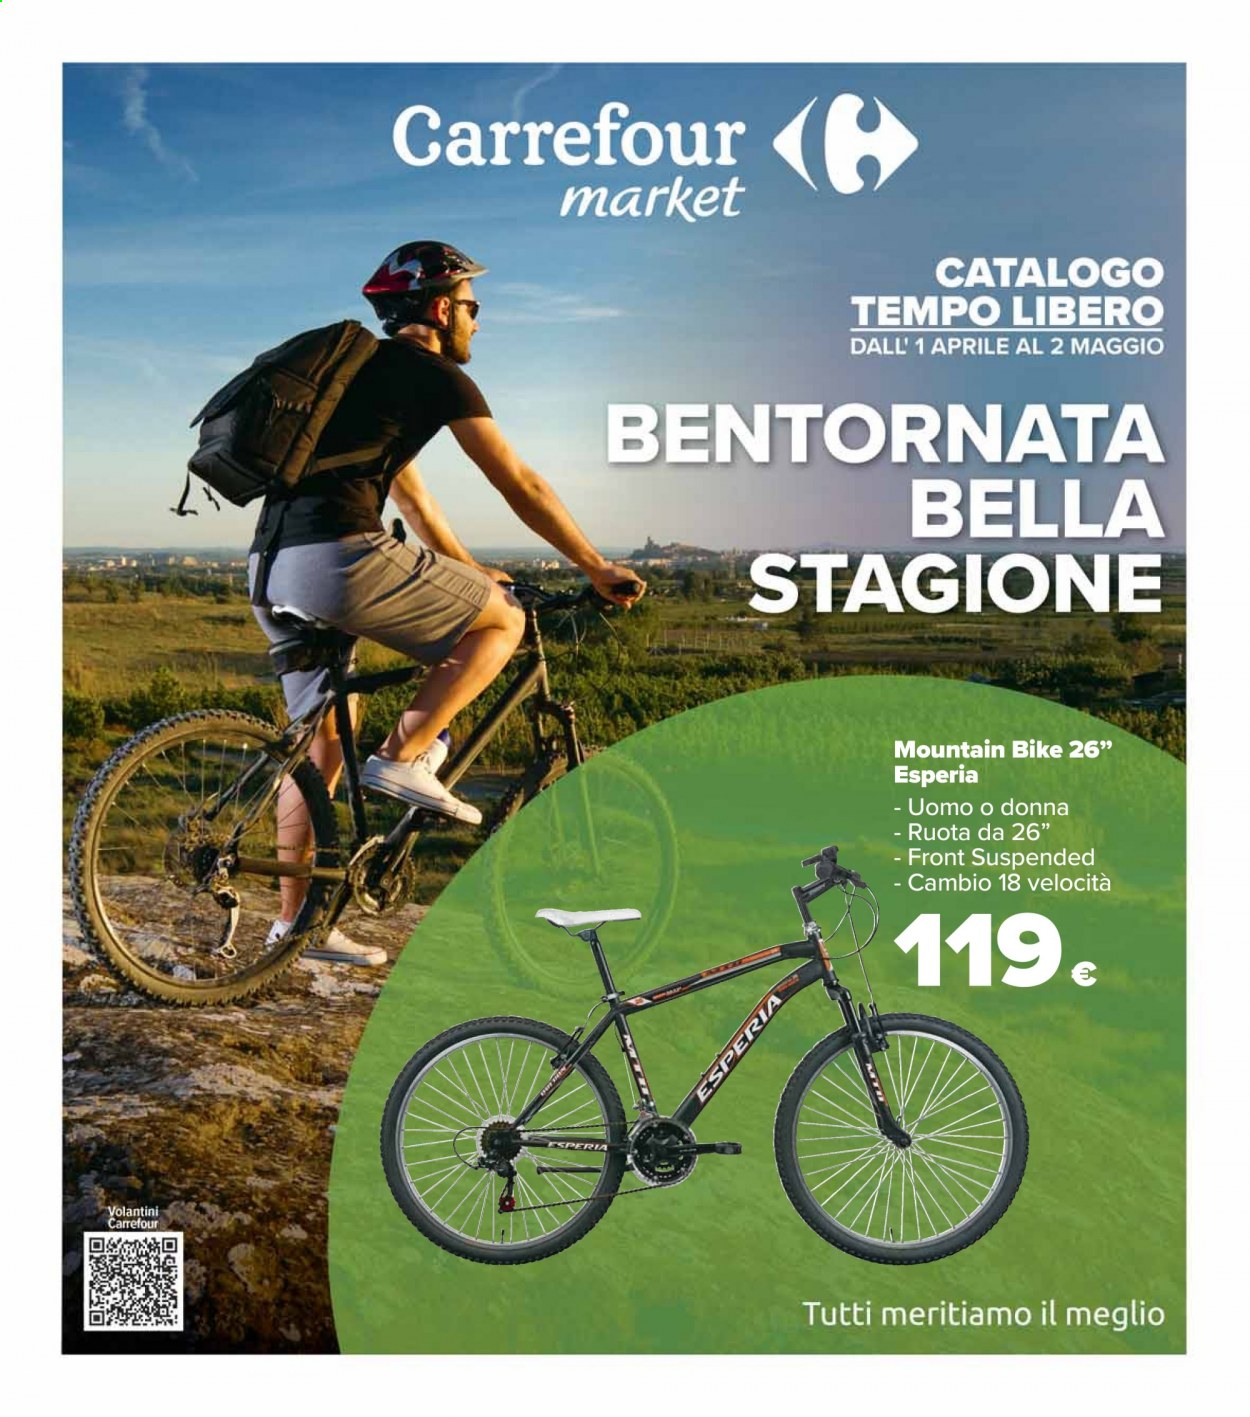 Volantino Carrefour - 1.4.2021 - 2.5.2021.